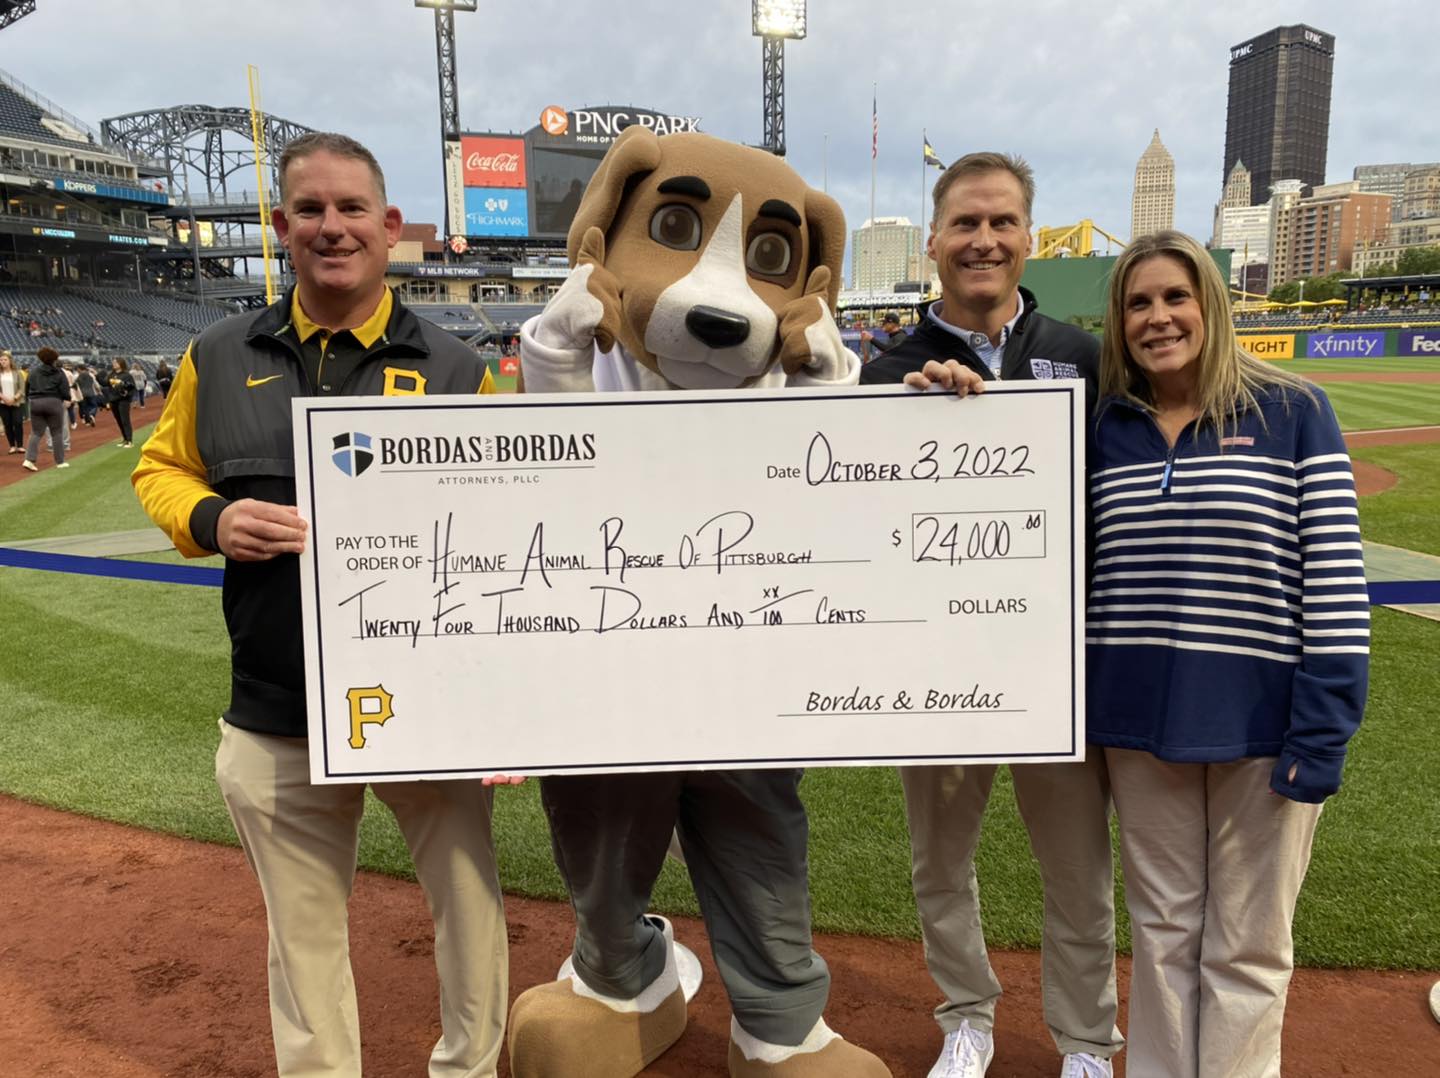 Bordas & Bordas Donates $24,800 to Humane Animal Rescue of Pittsburgh through Pittsburgh Pirates Partnership